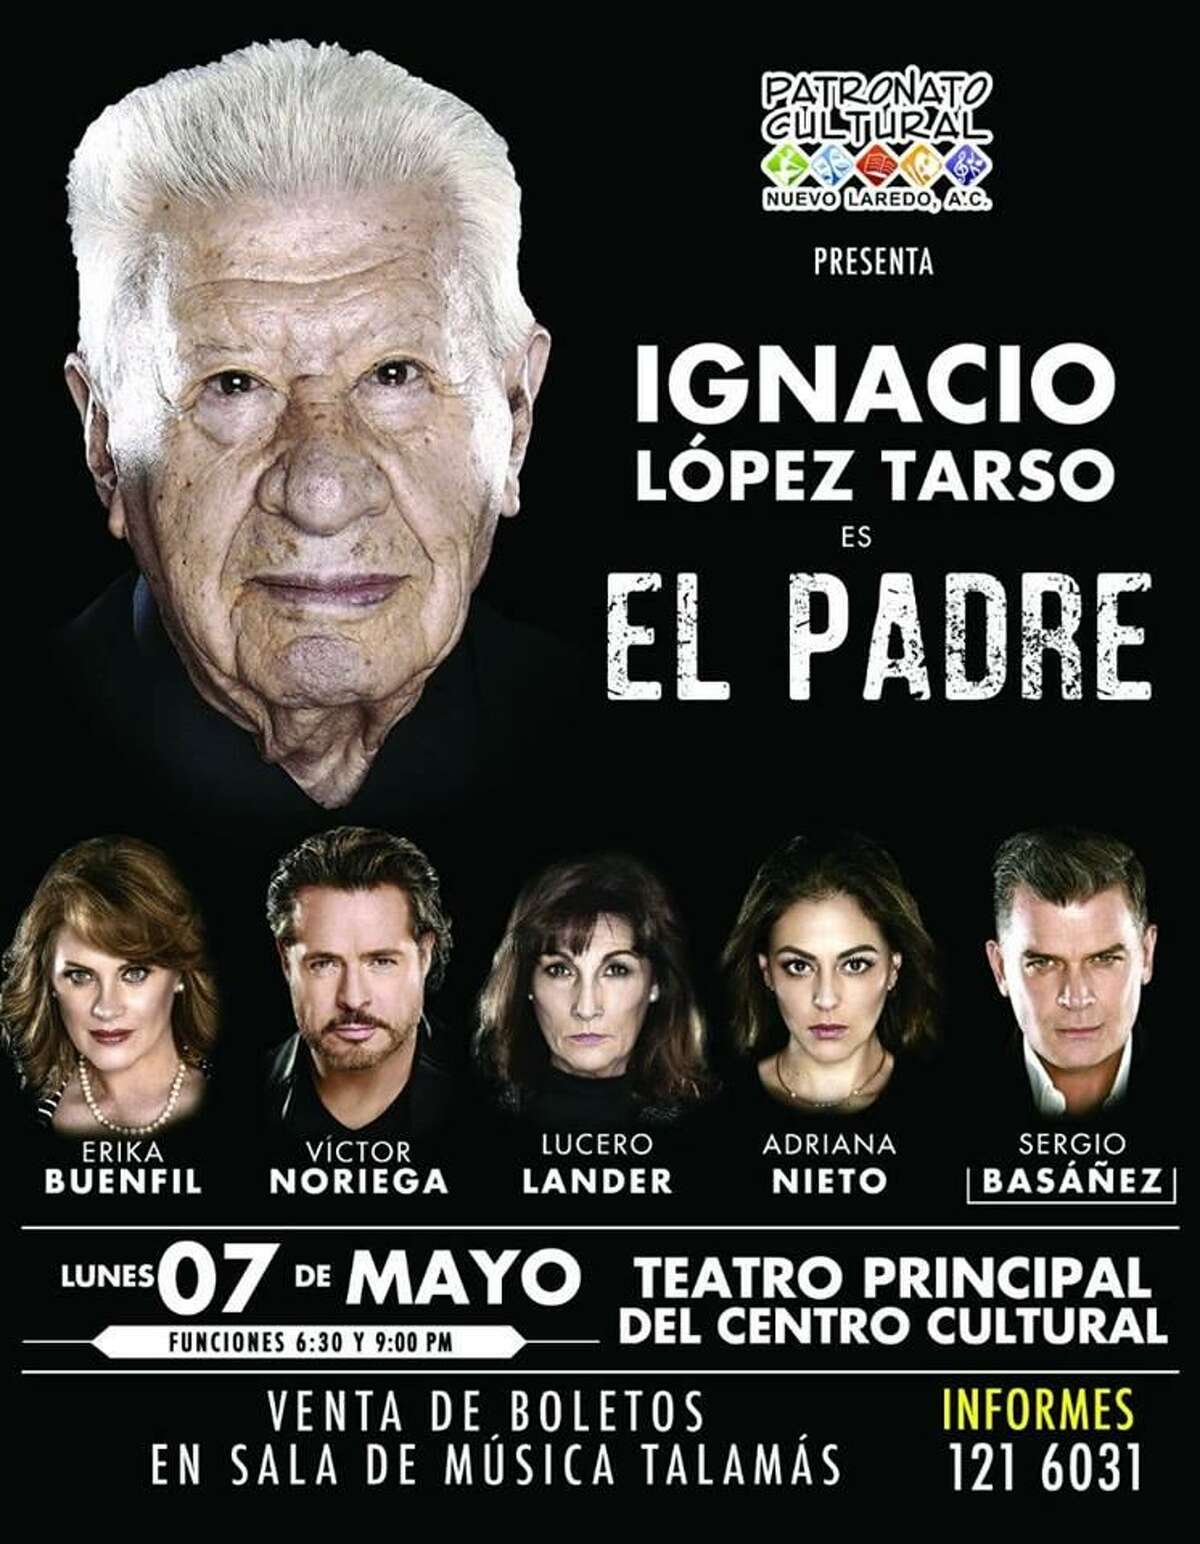 El primer actor Ignacio López Tarso es el protagonista de la puesta en escena “El Padre”, que se presentará hoy en dos funciones en el Teatro Principal del Centro Cultural Nuevo Laredo, México.